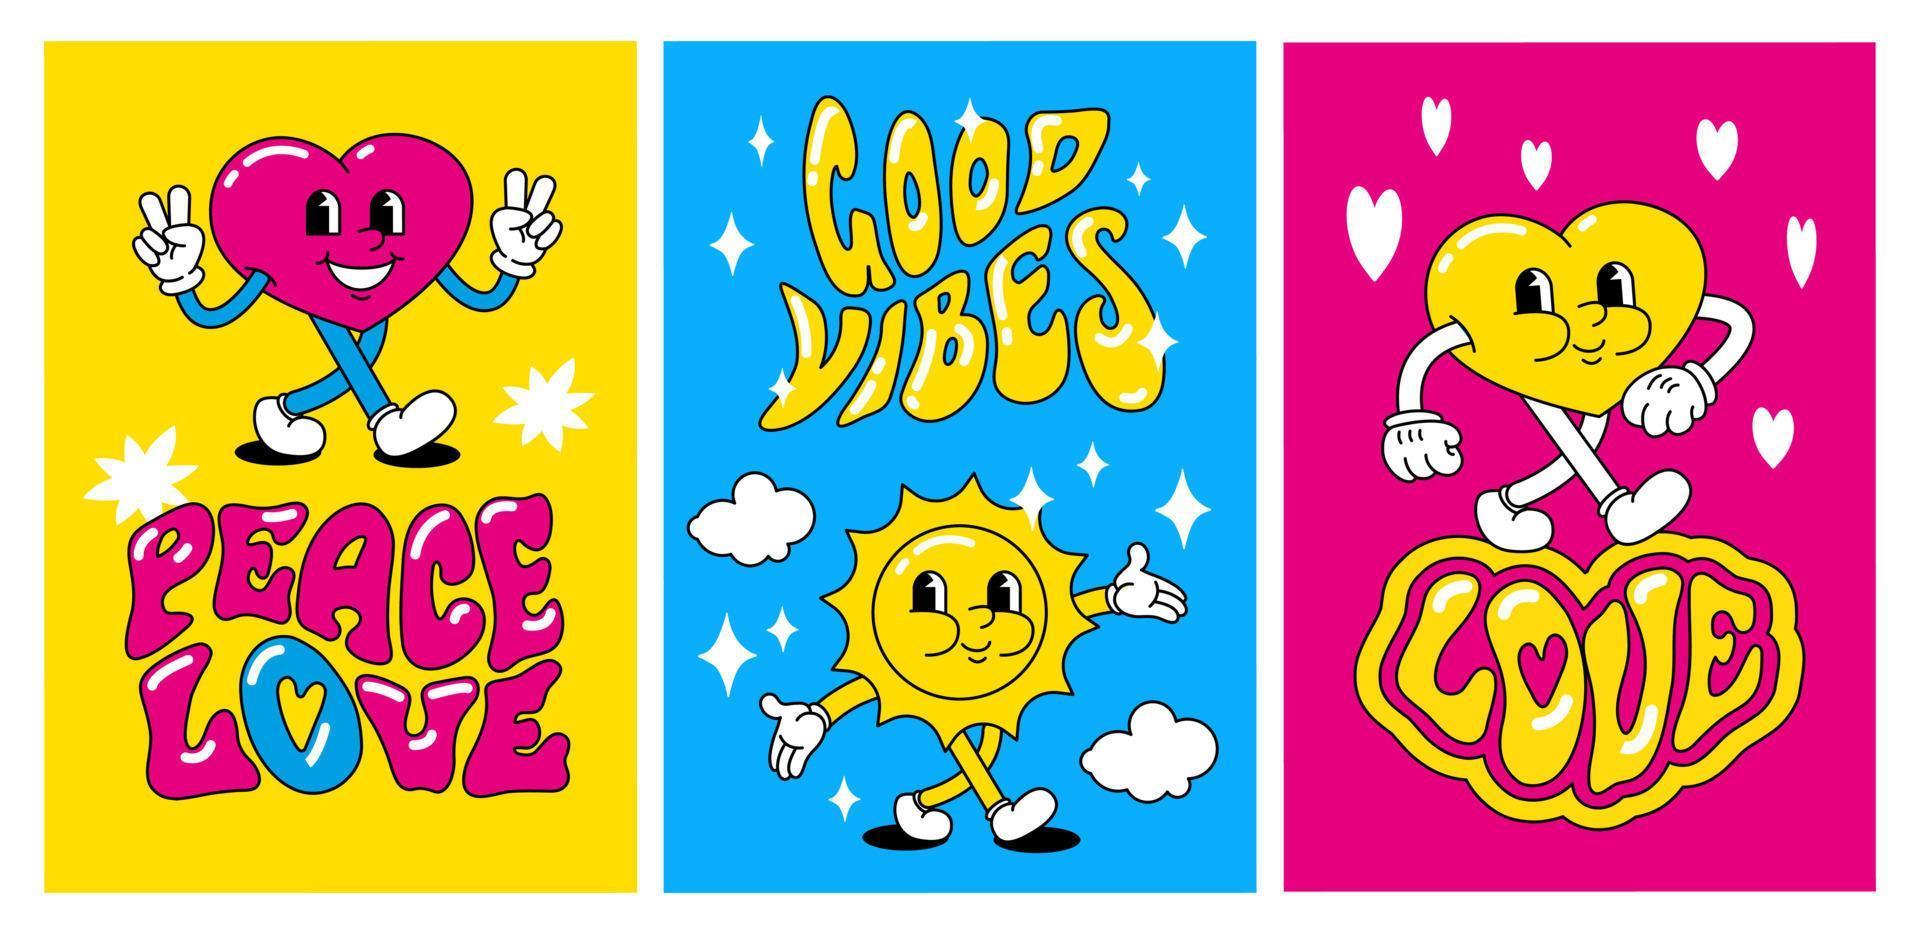 un ensemble de cartes postales rétro lumineuses dans le style hippie. les personnages de dessins animés coeur et soleil sourient. paix et amour, bonnes vibrations vecteur